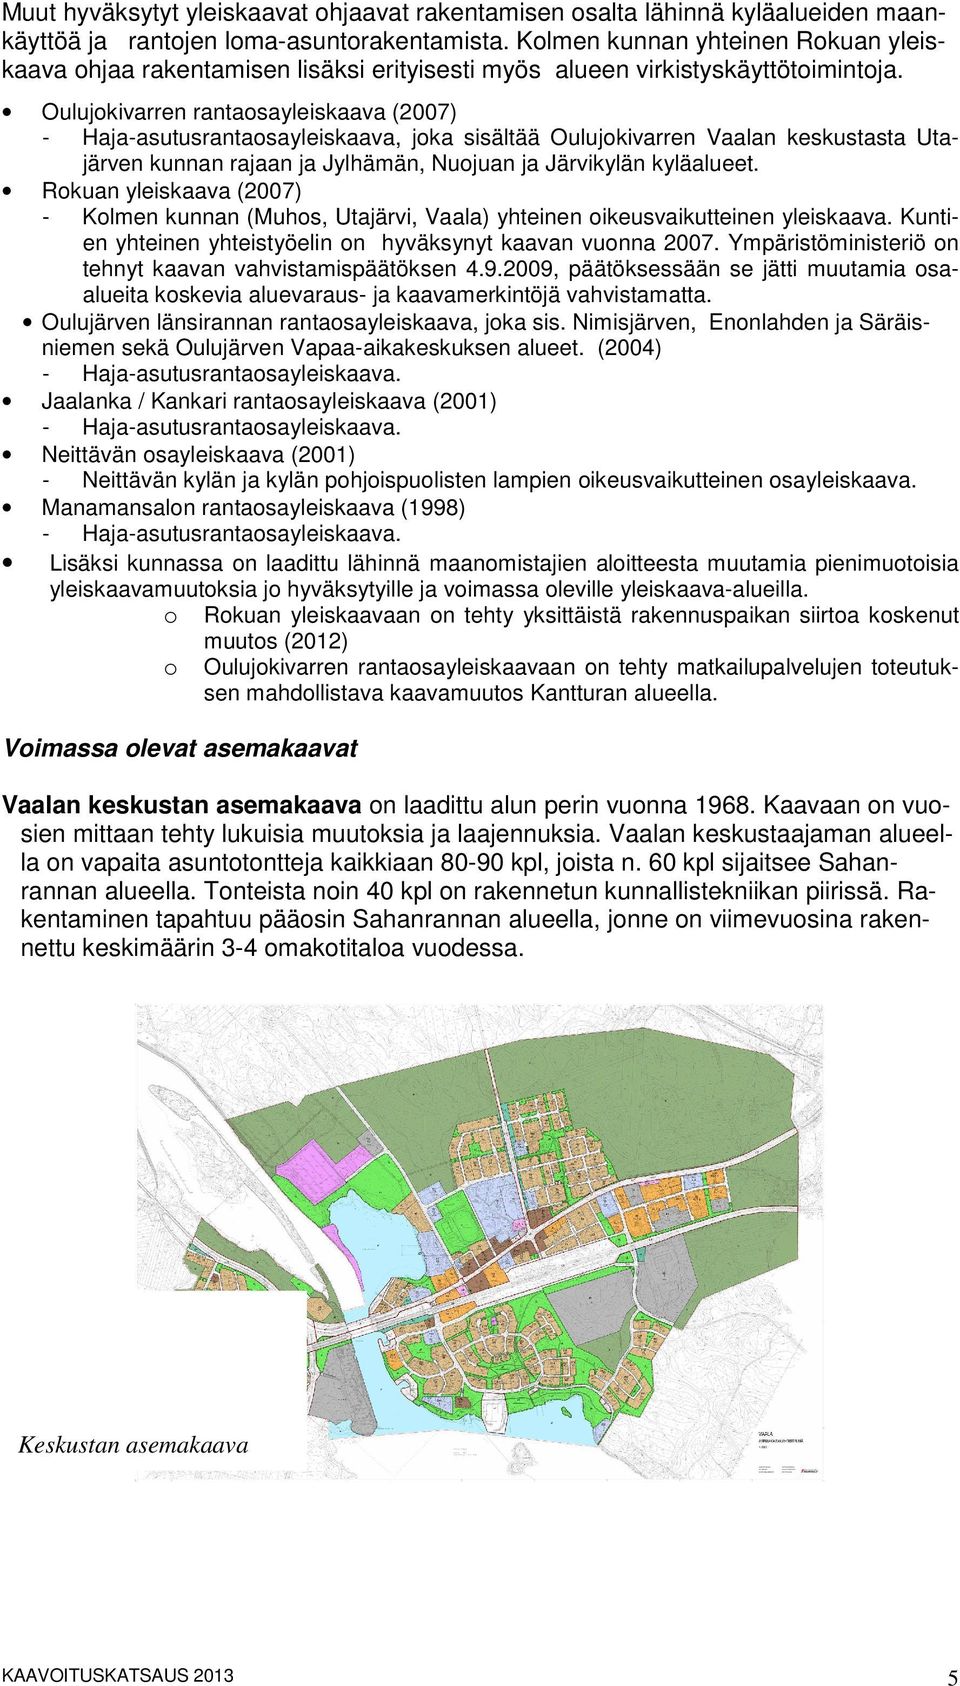 Oulujokivarren rantaosayleiskaava (2007) - Haja-asutusrantaosayleiskaava, joka sisältää Oulujokivarren Vaalan keskustasta Utajärven kunnan rajaan ja Jylhämän, Nuojuan ja Järvikylän kyläalueet.